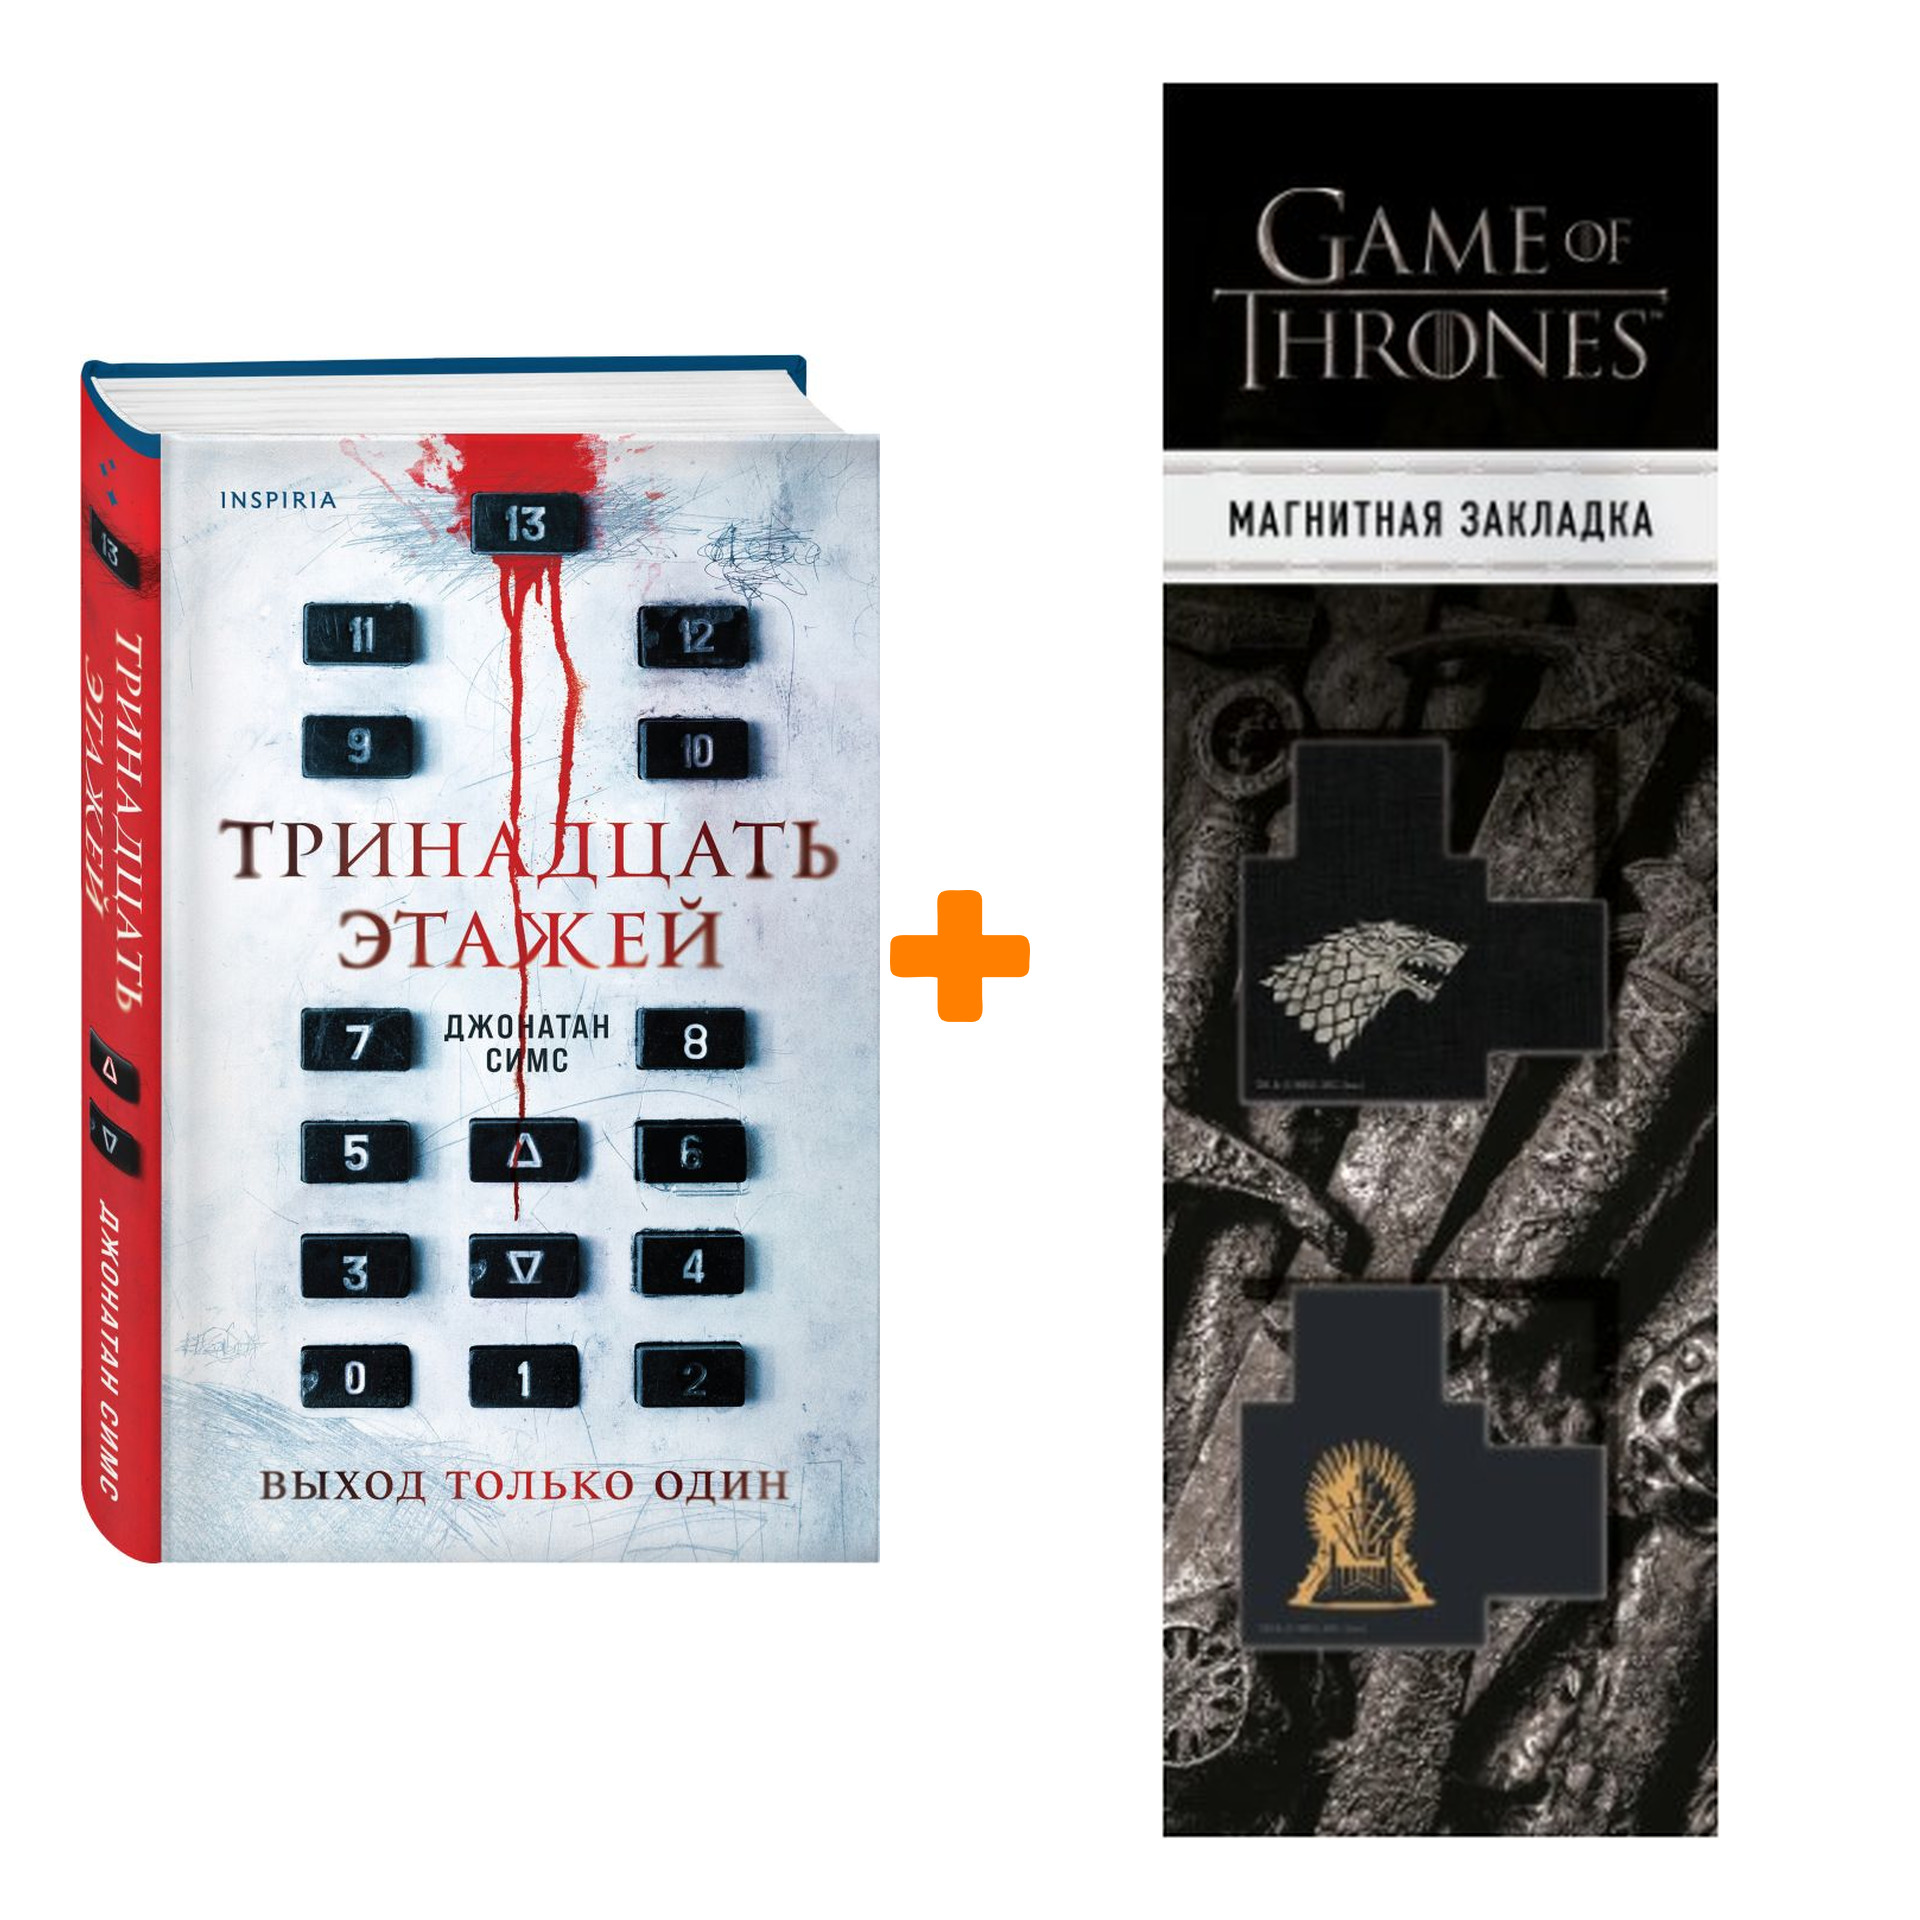 Набор Тринадцать этажей. Джонатан Симс + Закладка Game Of Thrones Трон и Герб Старков магнитная 2-Pack